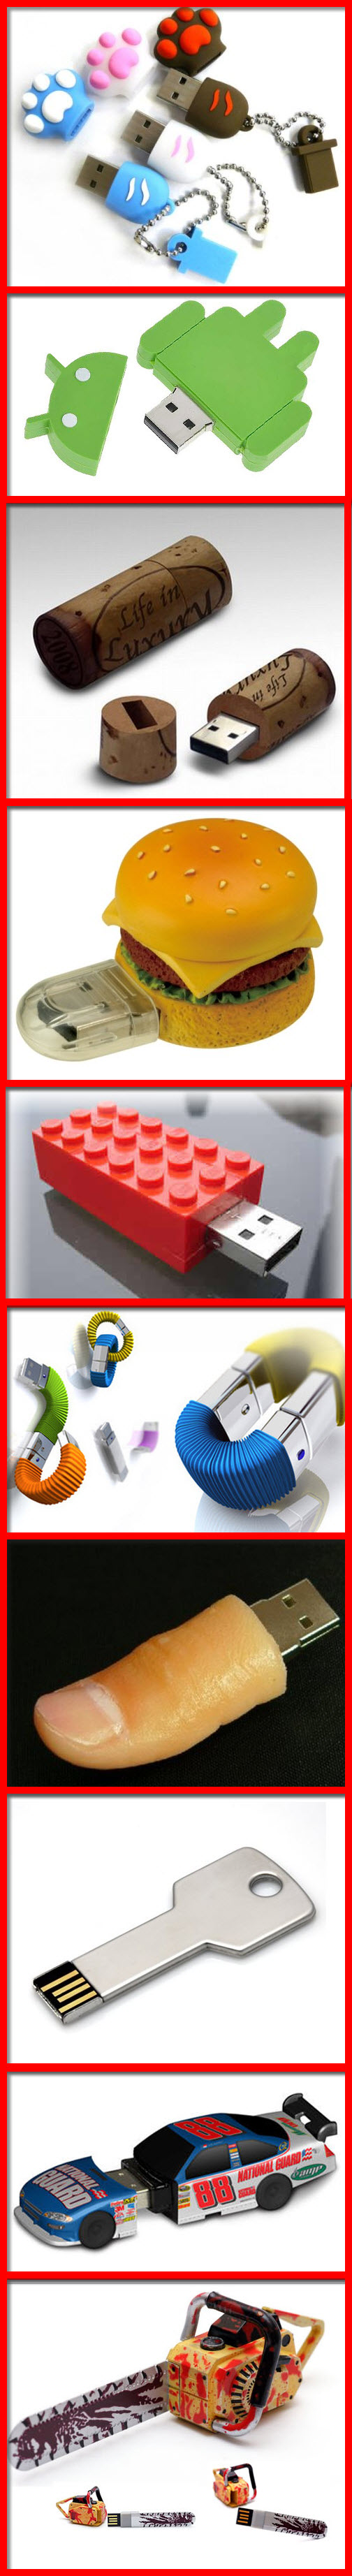 Memorias USB raras